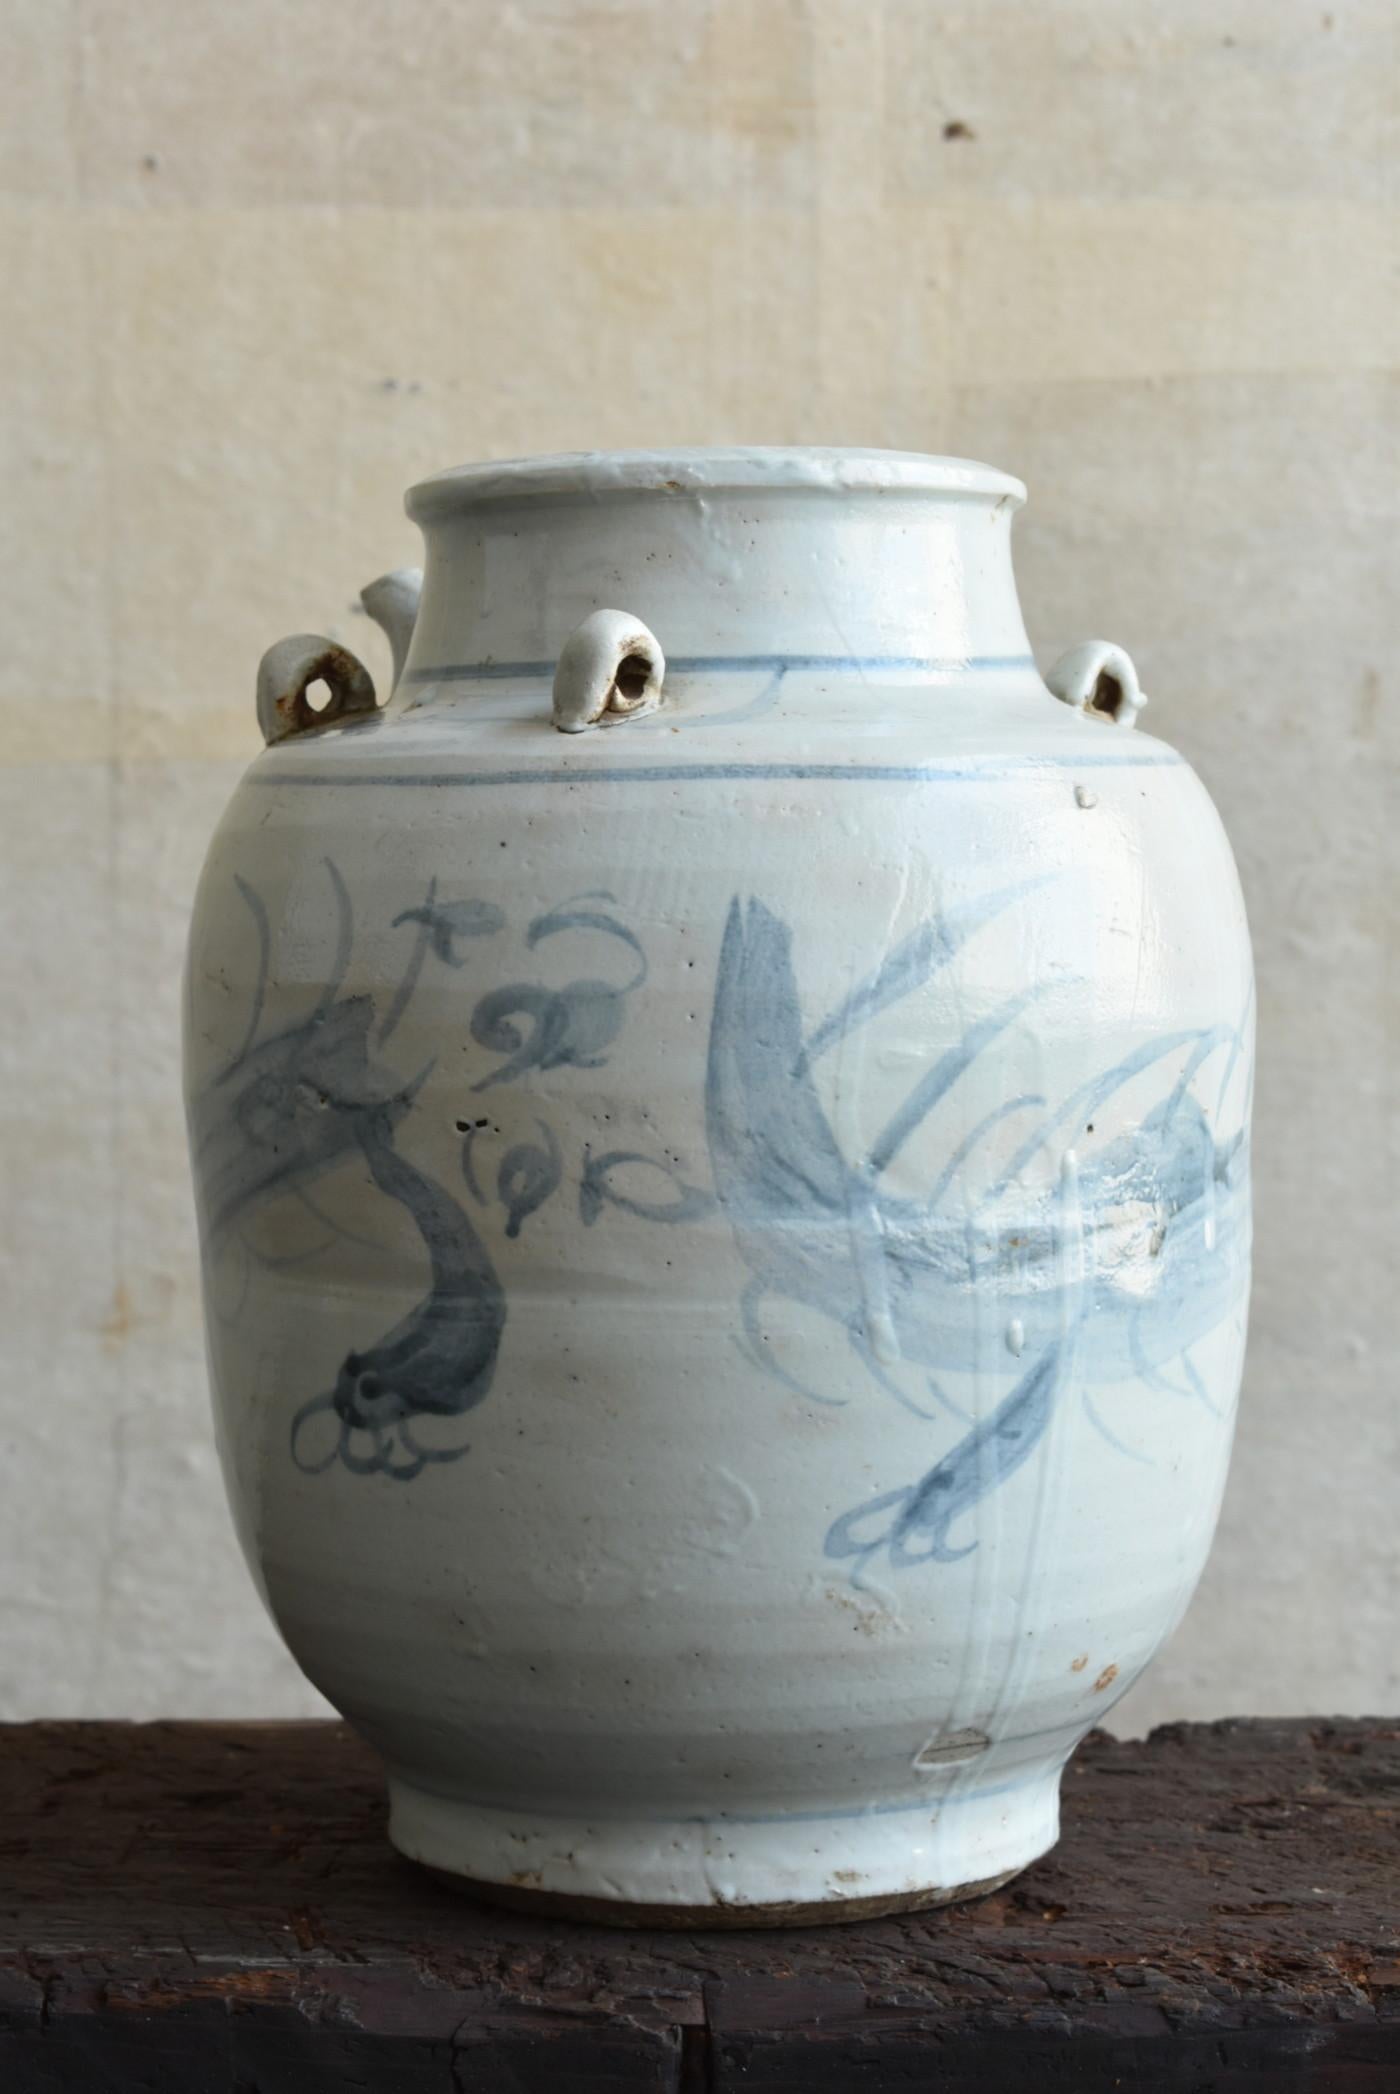 Il s'agit d'un vase en porcelaine blanche fabriqué à la fin de la dynastie Qing en Chine.
Fabriqué autour du 19e siècle.
Il a une forme intéressante avec quatre oreilles et un bec.

Le motif dessiné sur l'ensemble du récipient est un dragon.
Il est